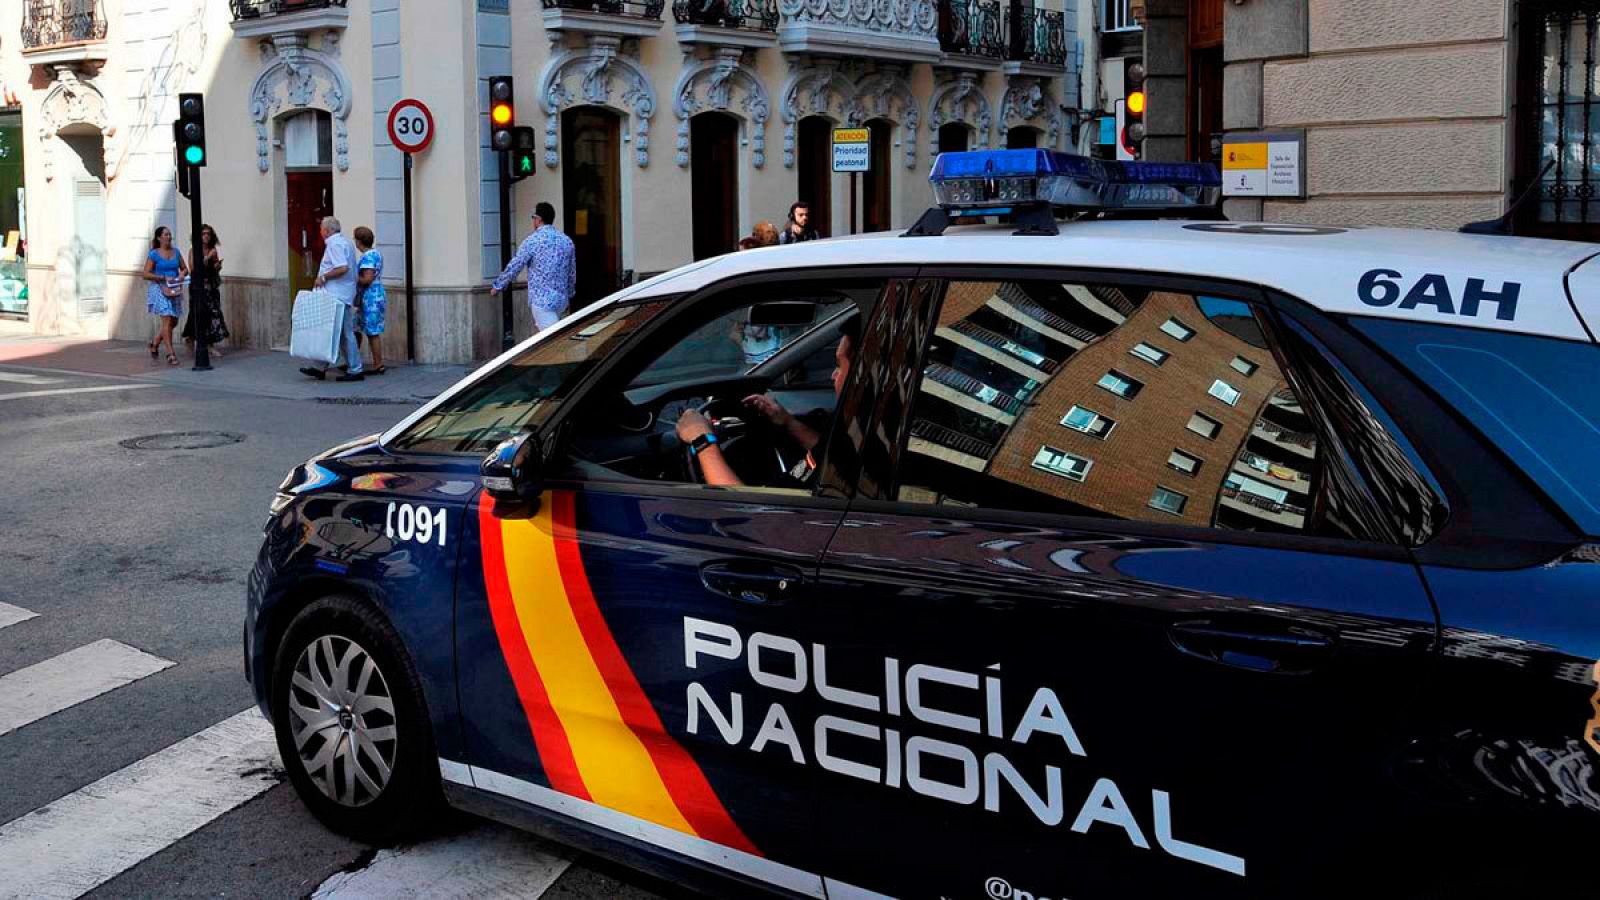 Imagen de archivo de un vehículo de la Policía Nacional